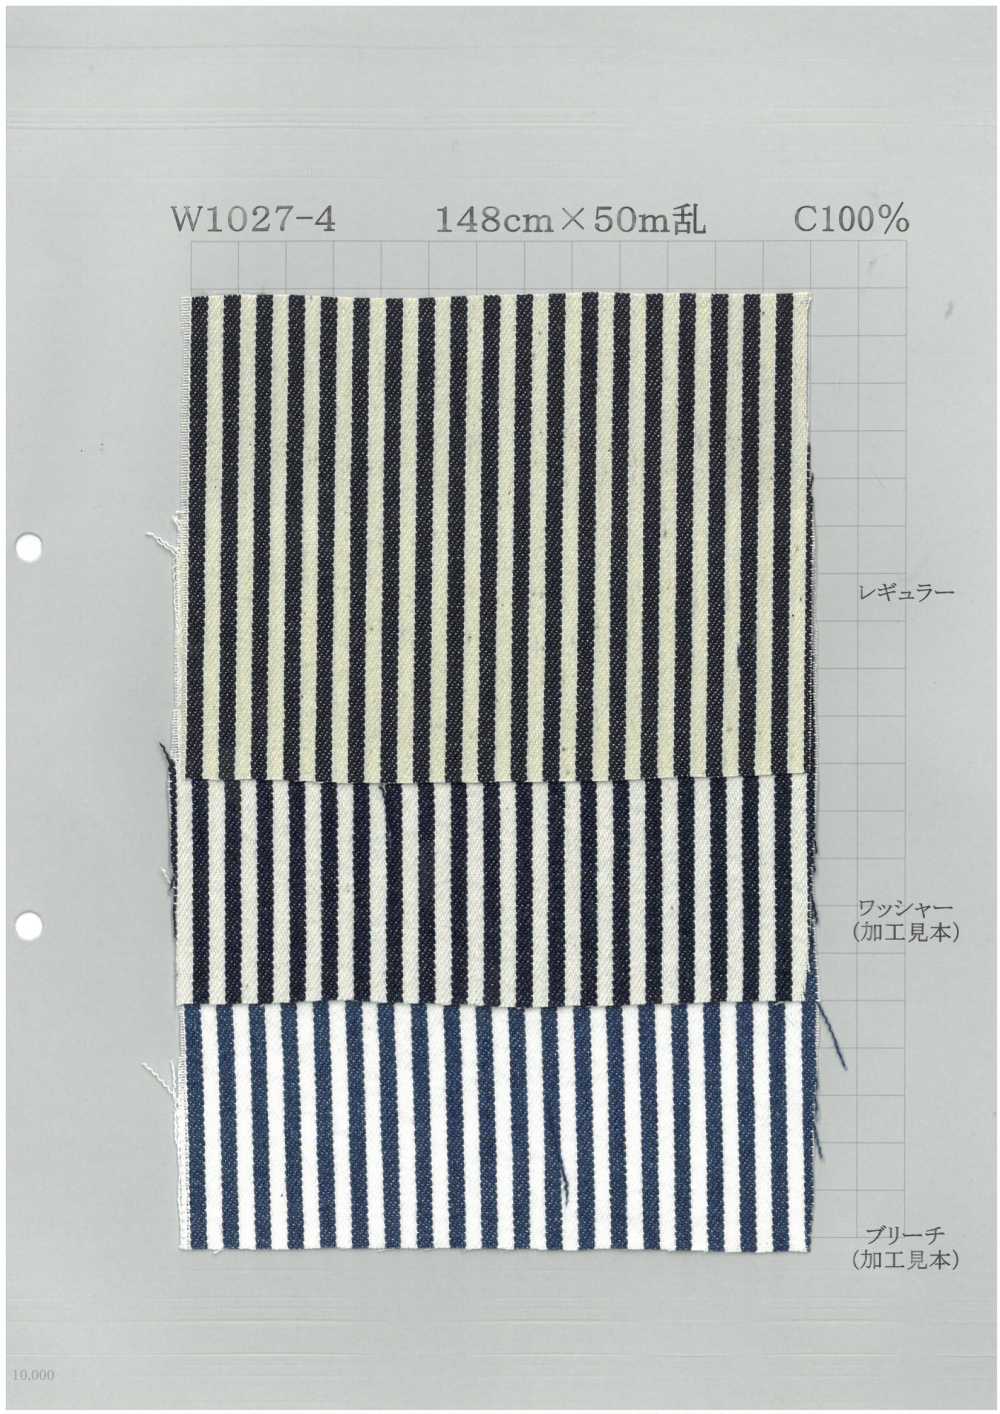 W1027-4 Baumwoll-Denim Mit Kräftigen Streifen[Textilgewebe] Yoshiwa Textil